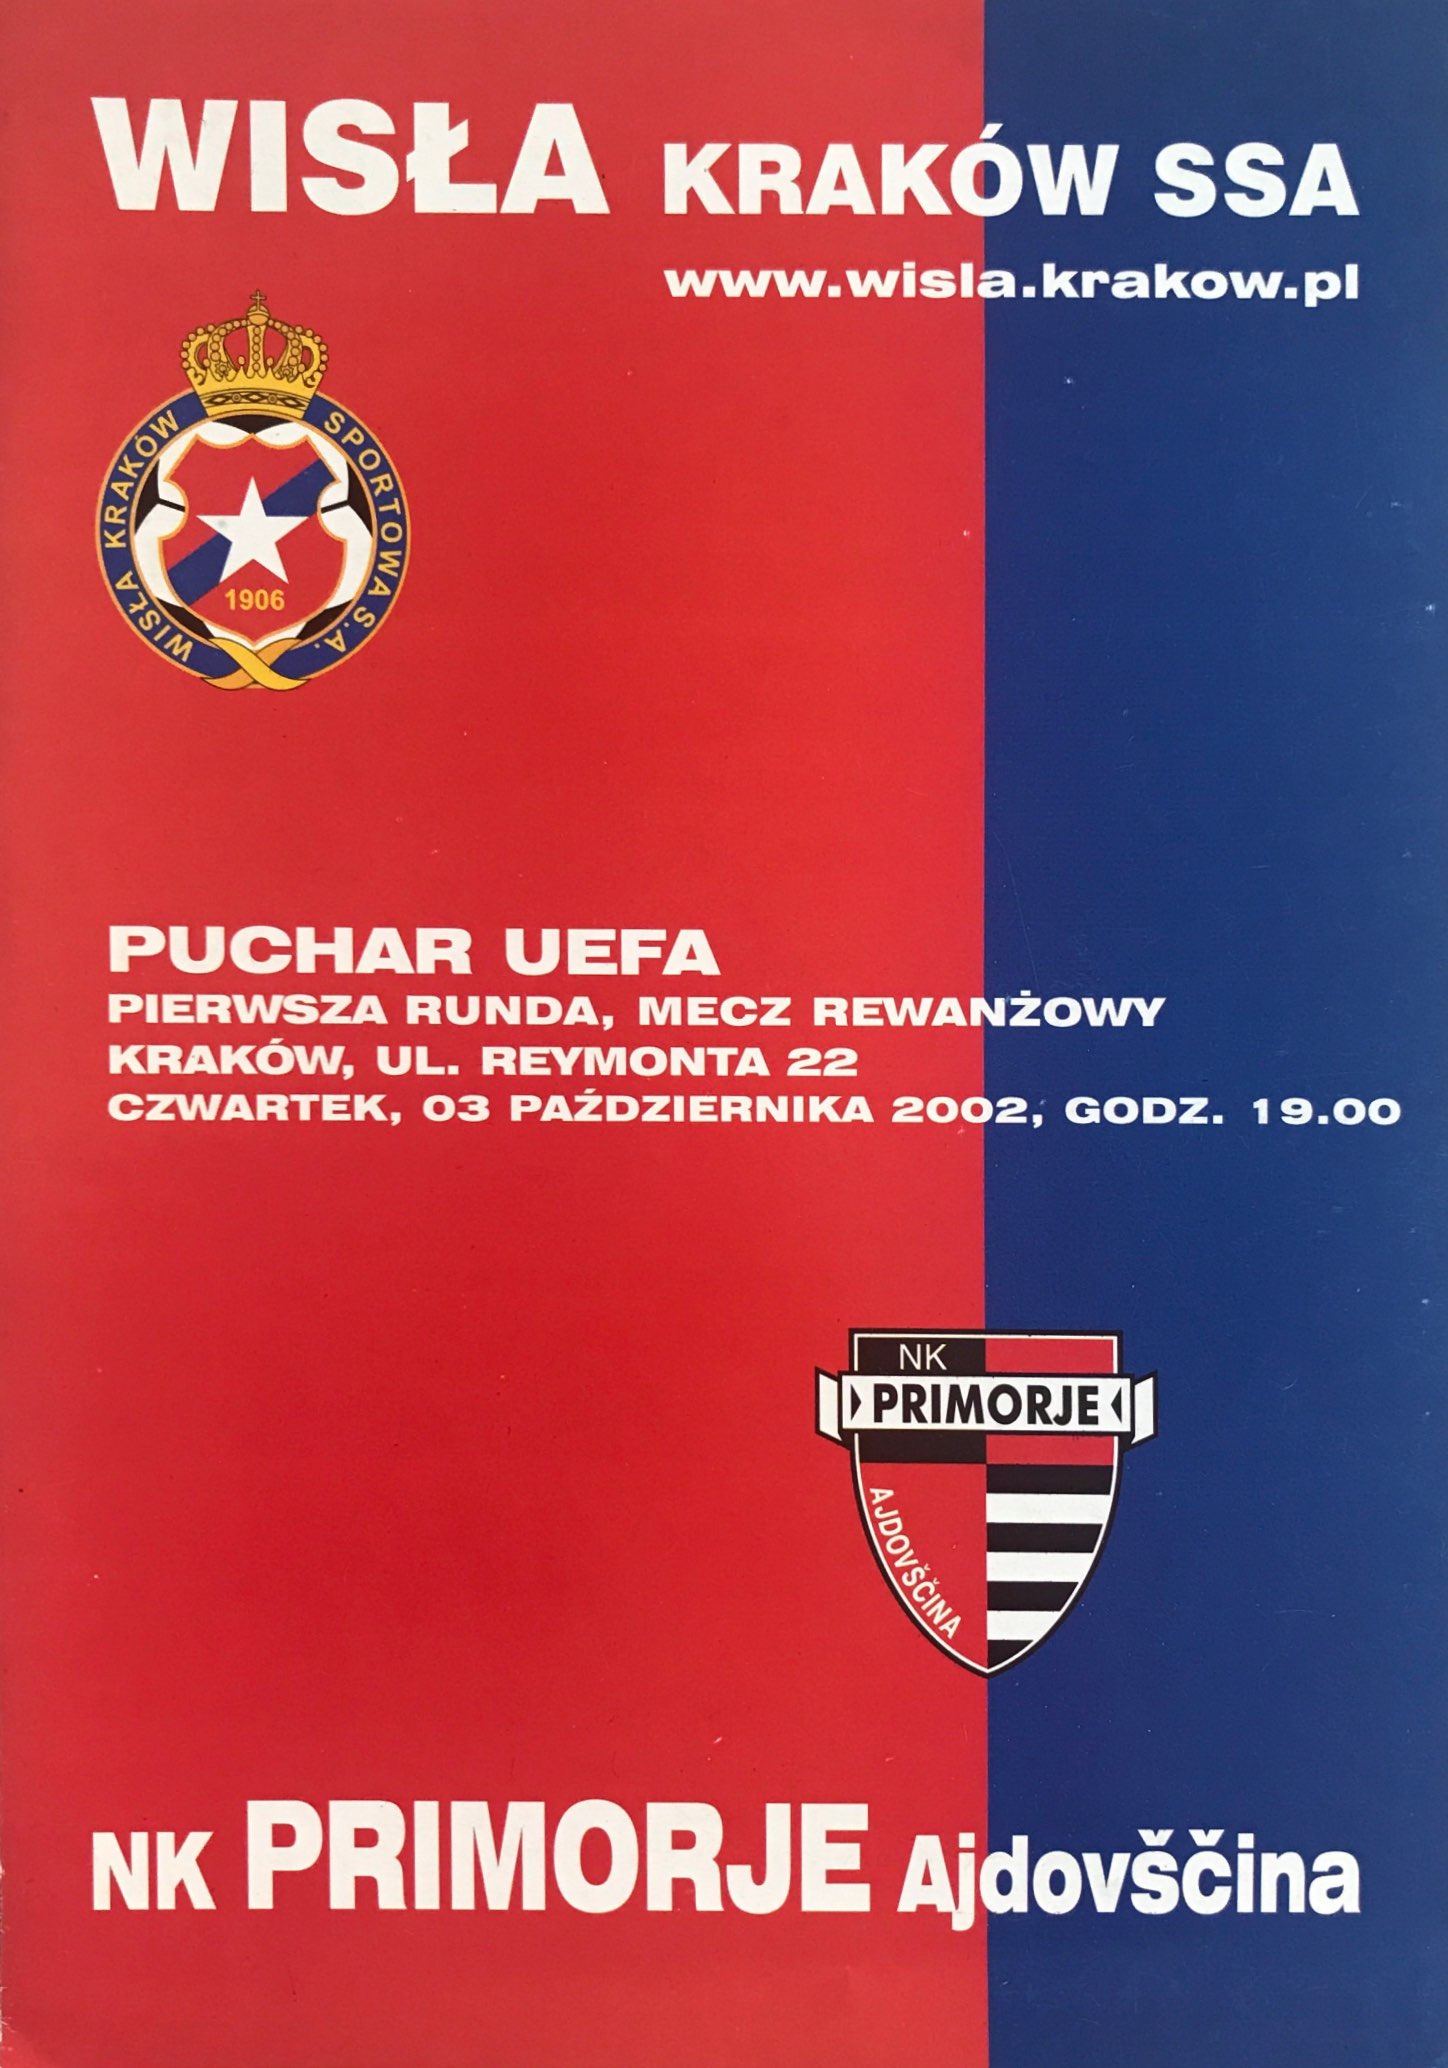 Program meczowy Wisła Kraków - NK Primorje 6:1 (03.10.2002).